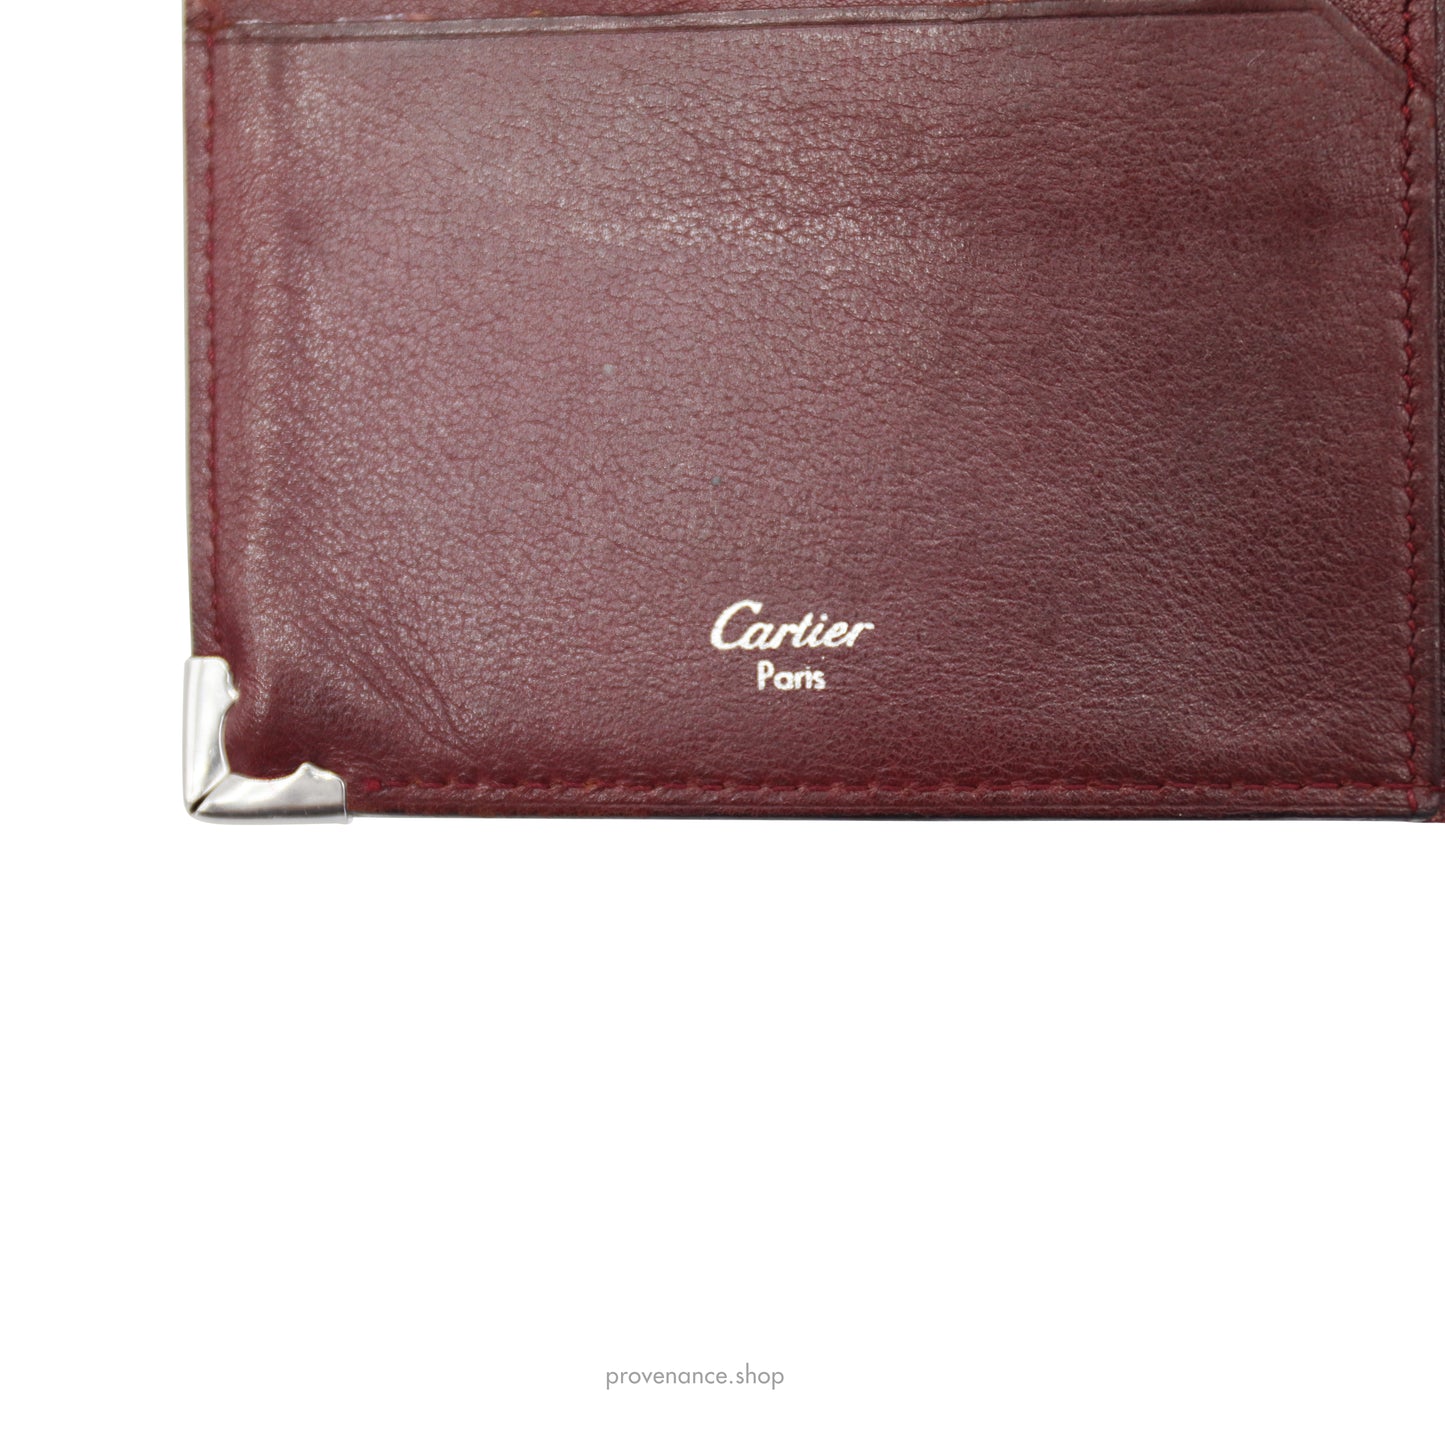 Cartier Tall Wallet - Black & Burgundy Calfskin Leather